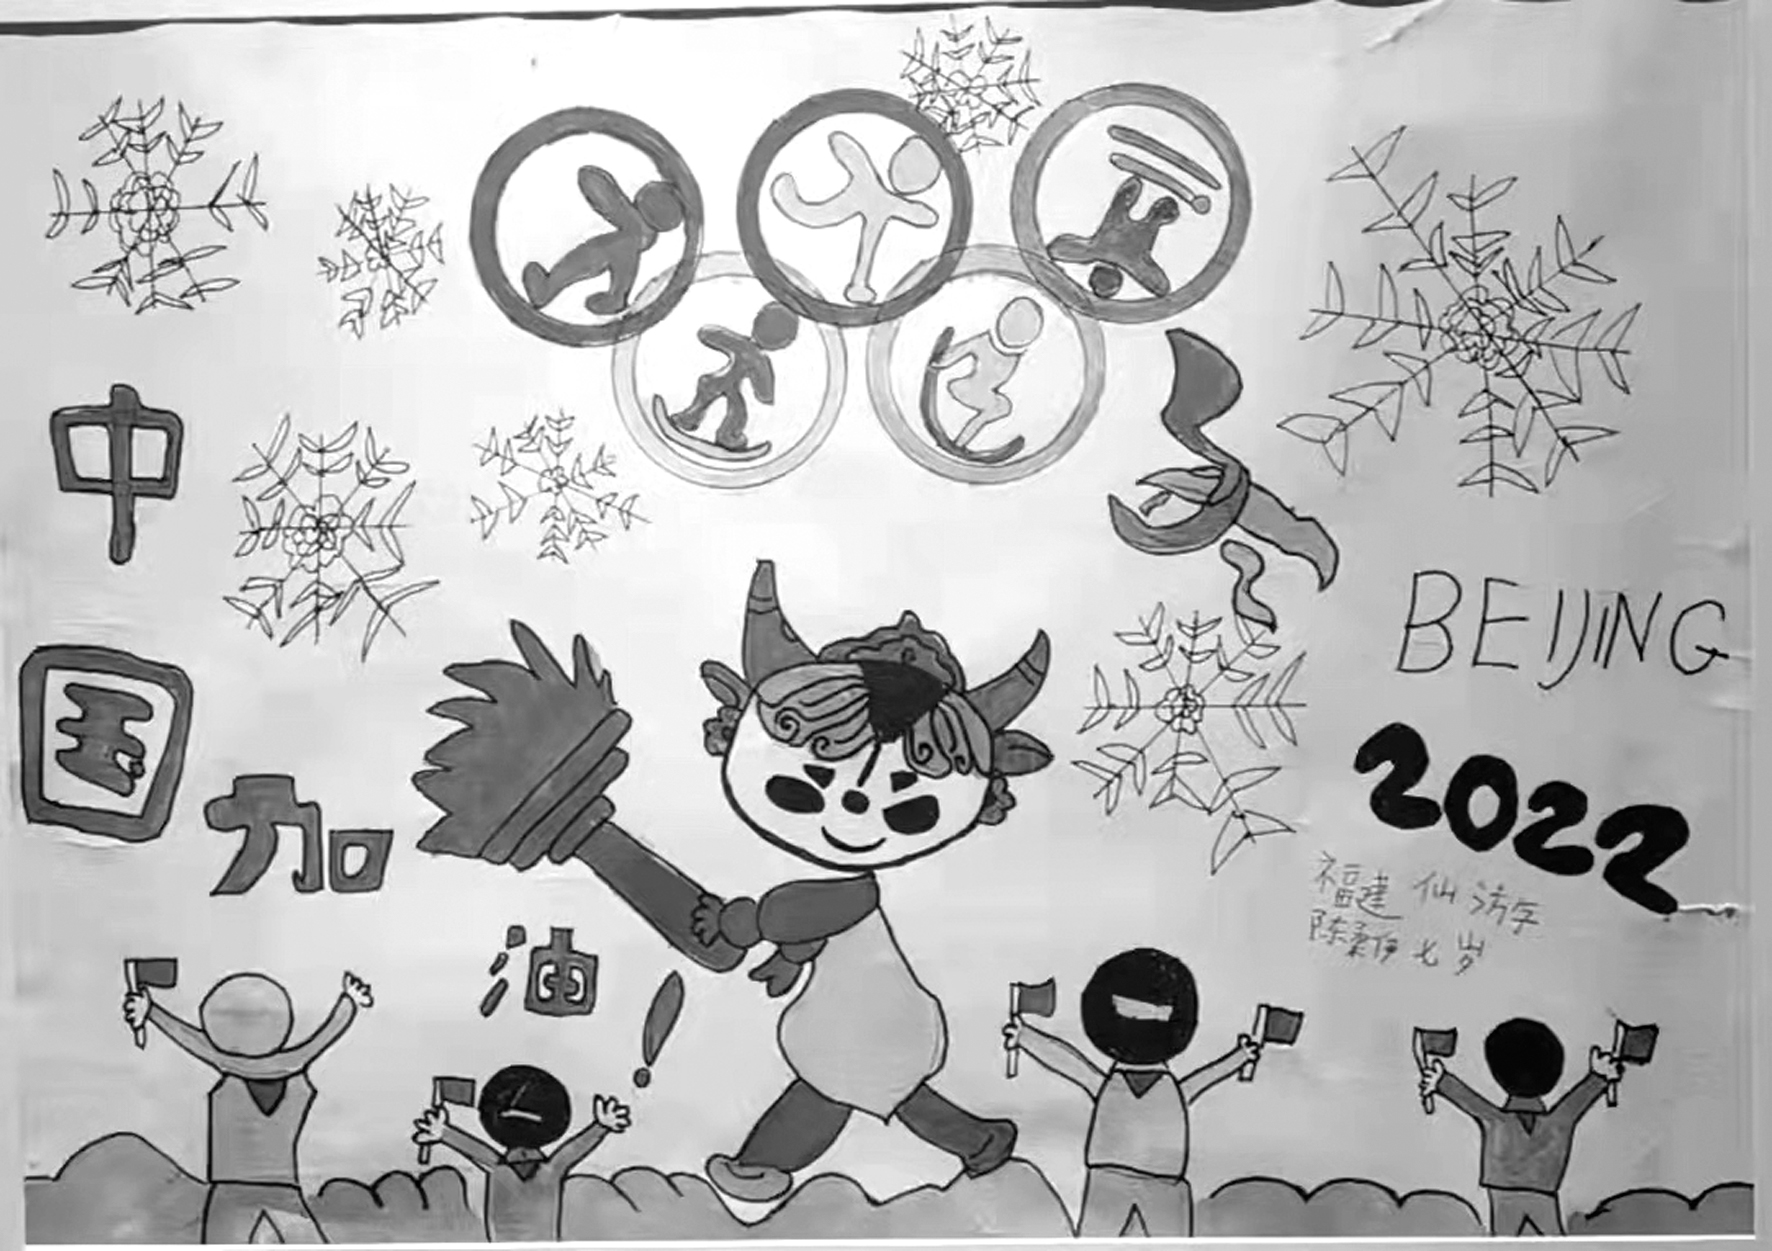 仙游一小朋友绘画作品入选北京冬奥主题展